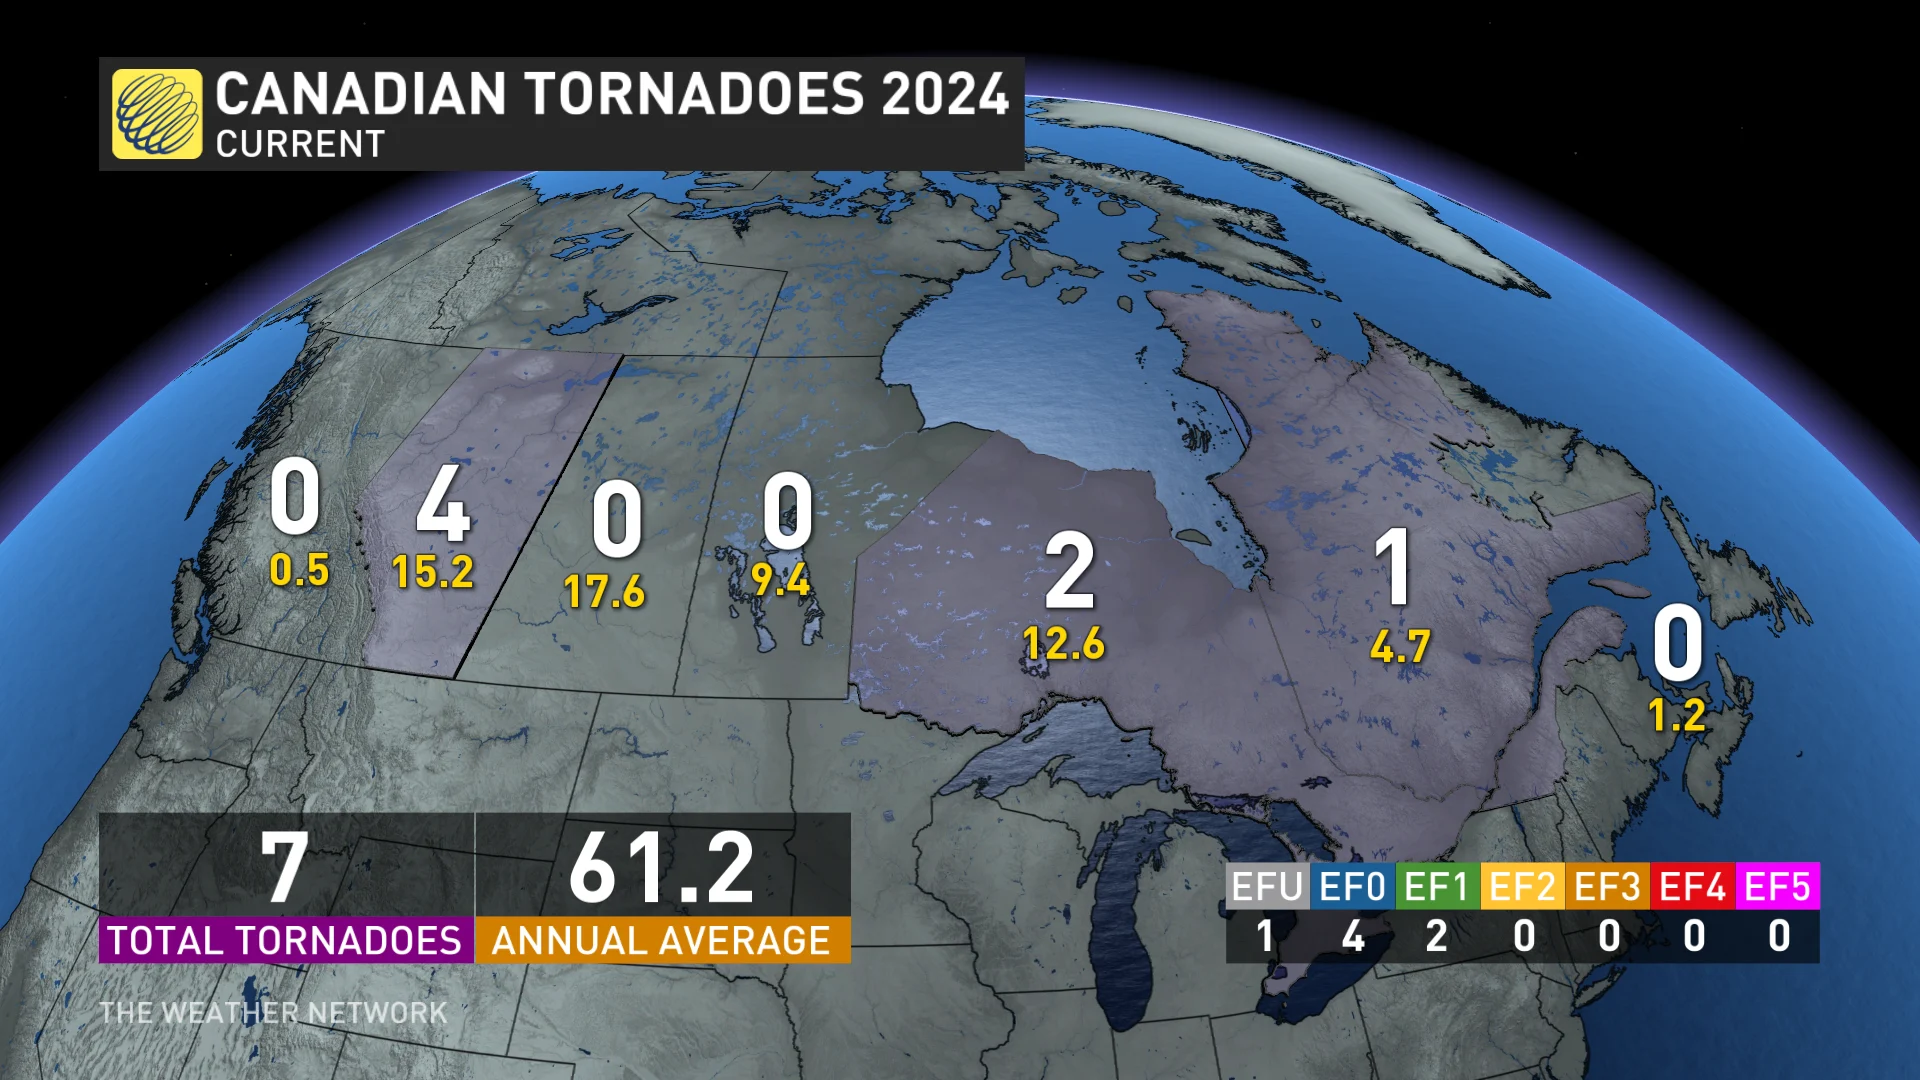 June 4: Tornadoes across Canada so far